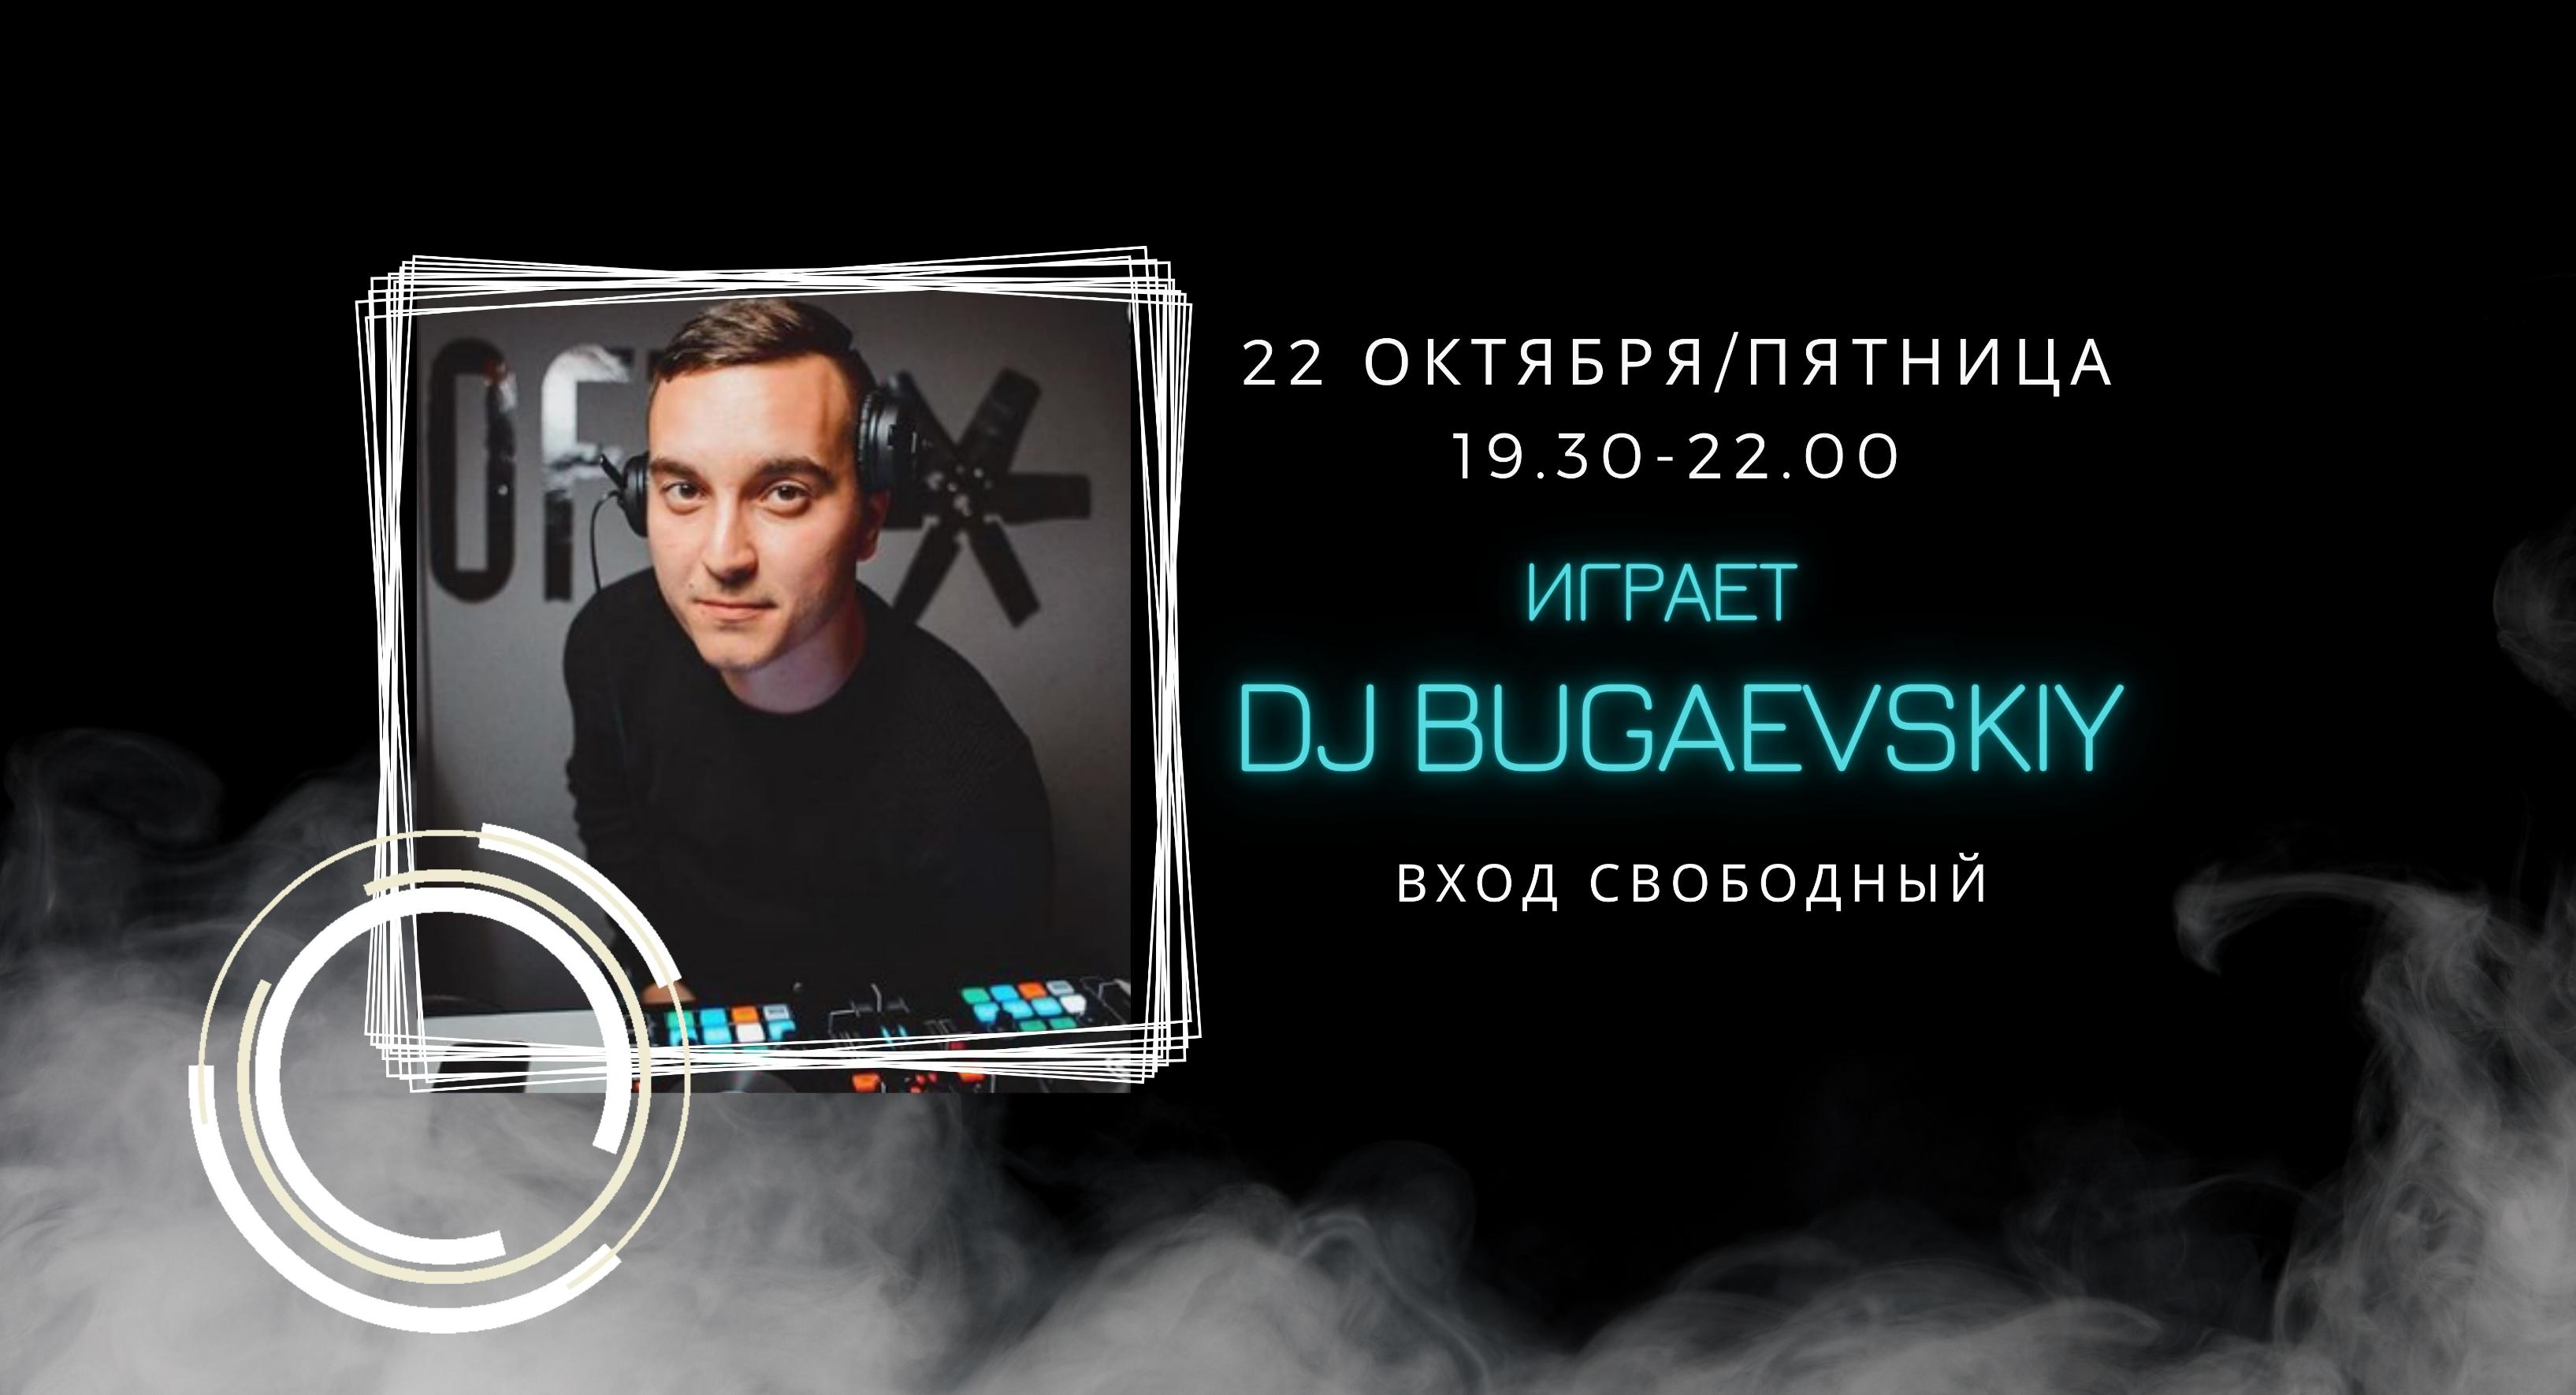 22.10 - на сцене DJ Bugaevskiy